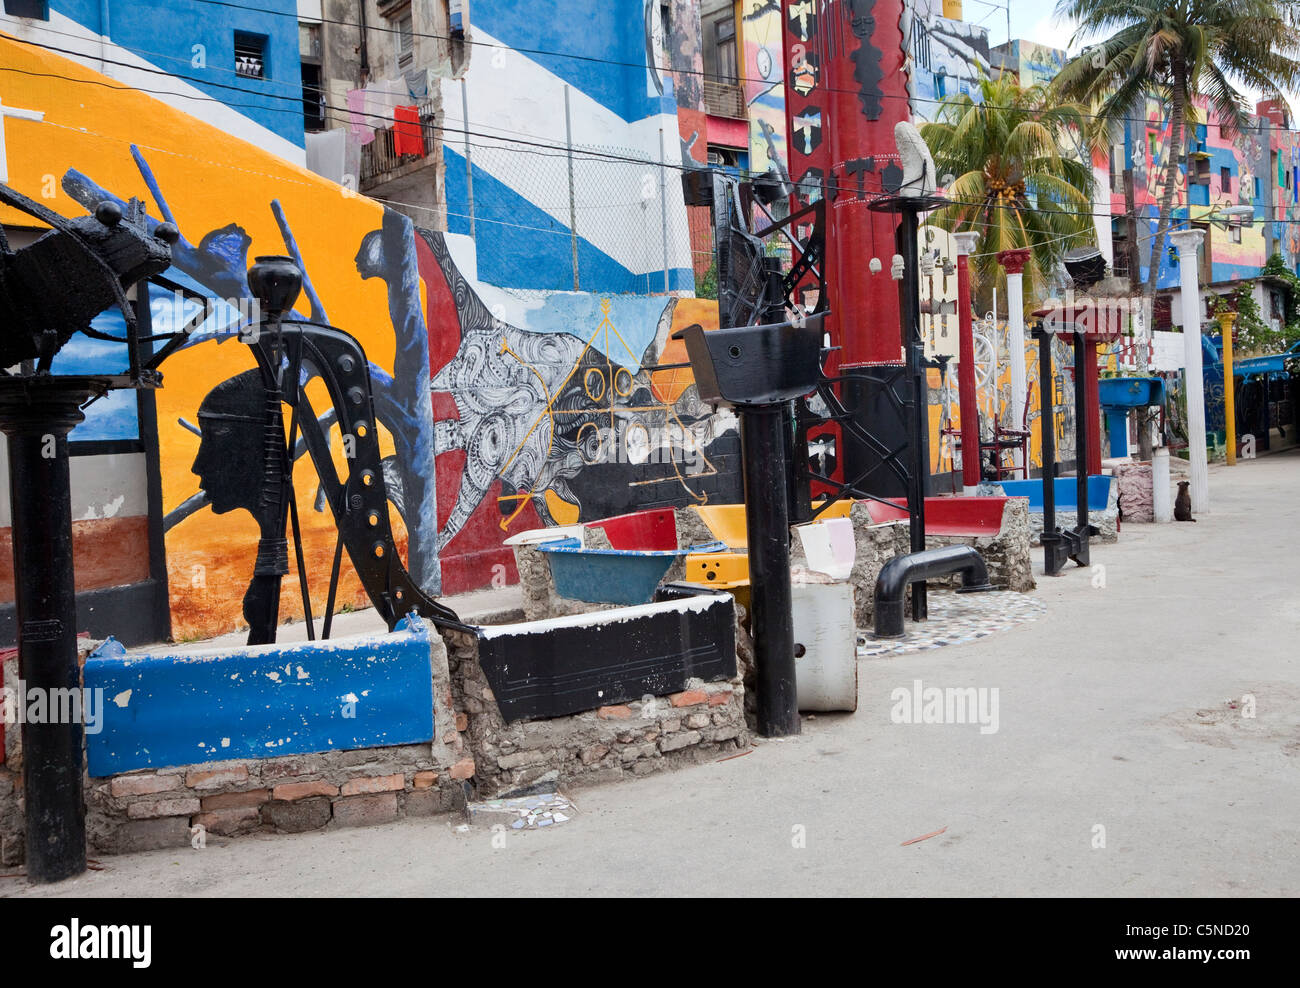 Cuba, La Havane. Callejon de Hamel les travaux d'art et sculpture, centre de La Havane. Banque D'Images